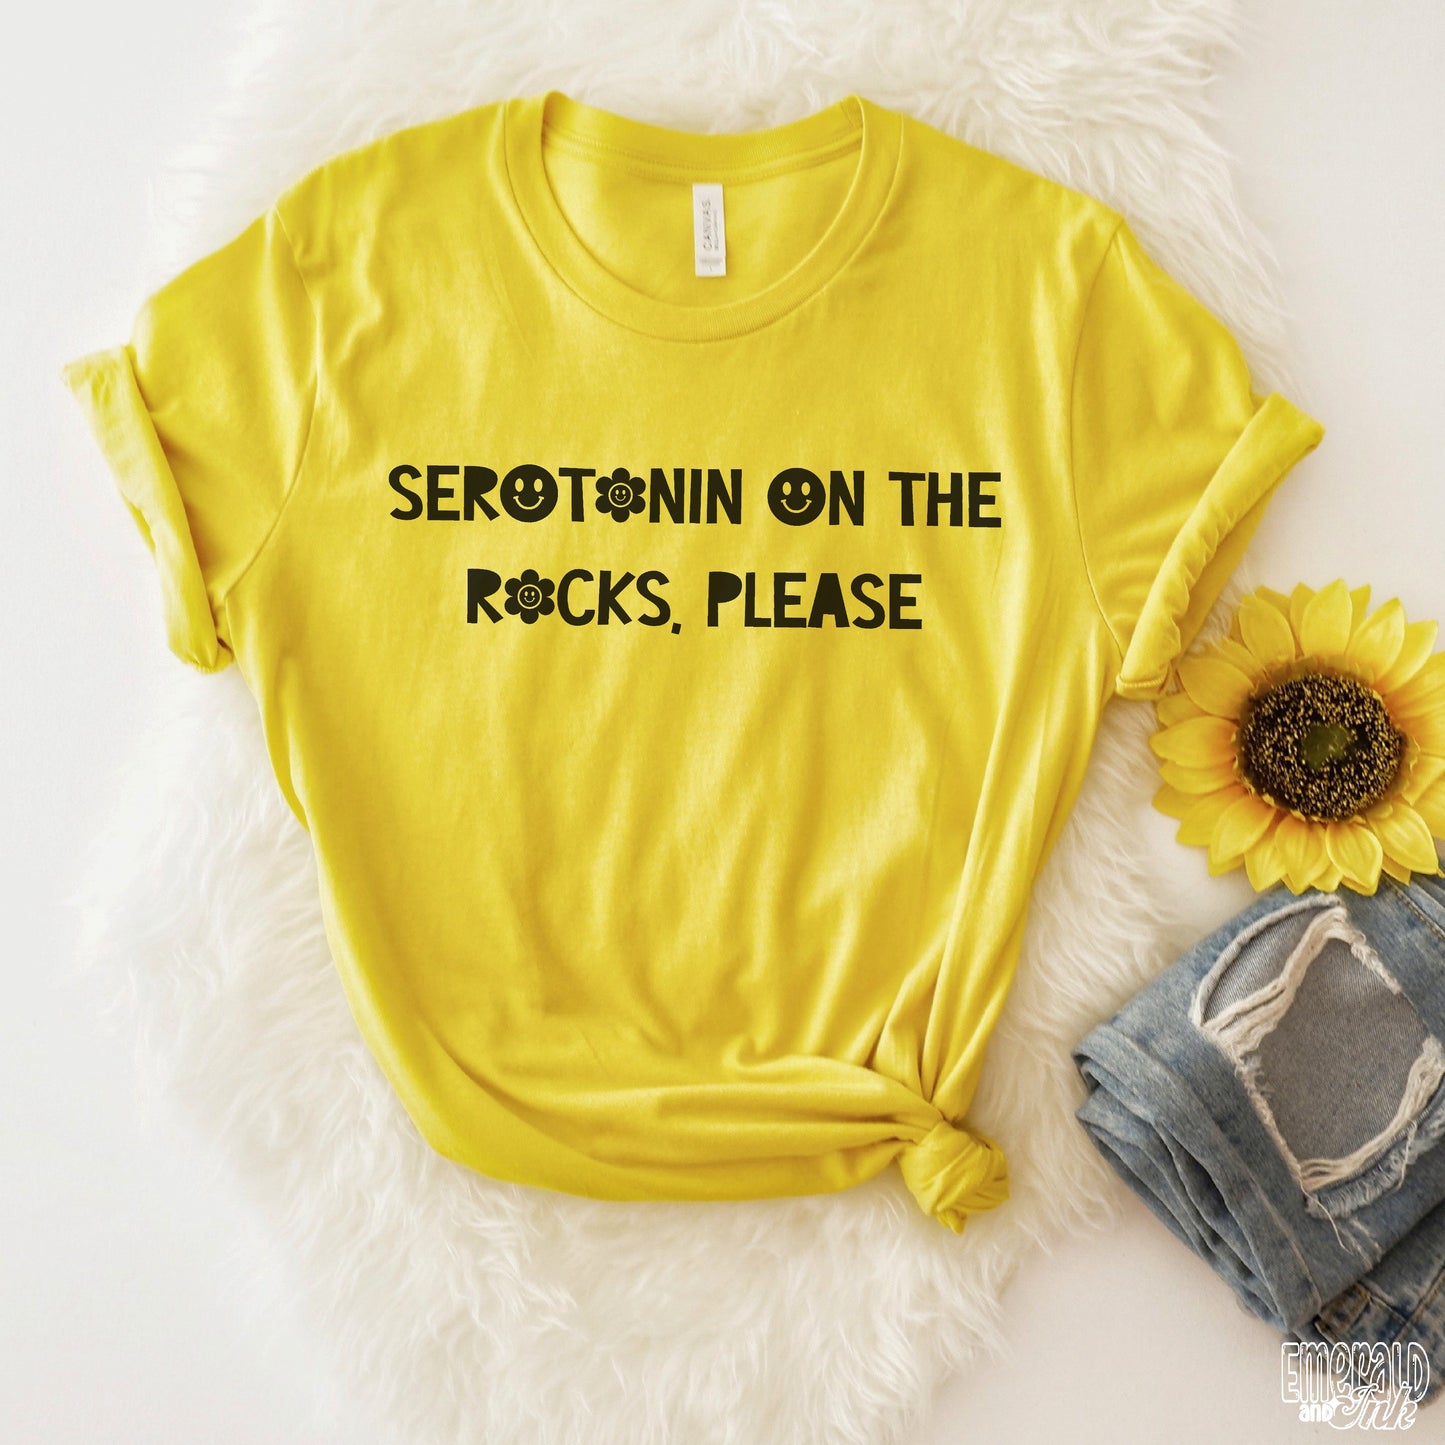 Serotonin on the rocks, please - DTF Transfer